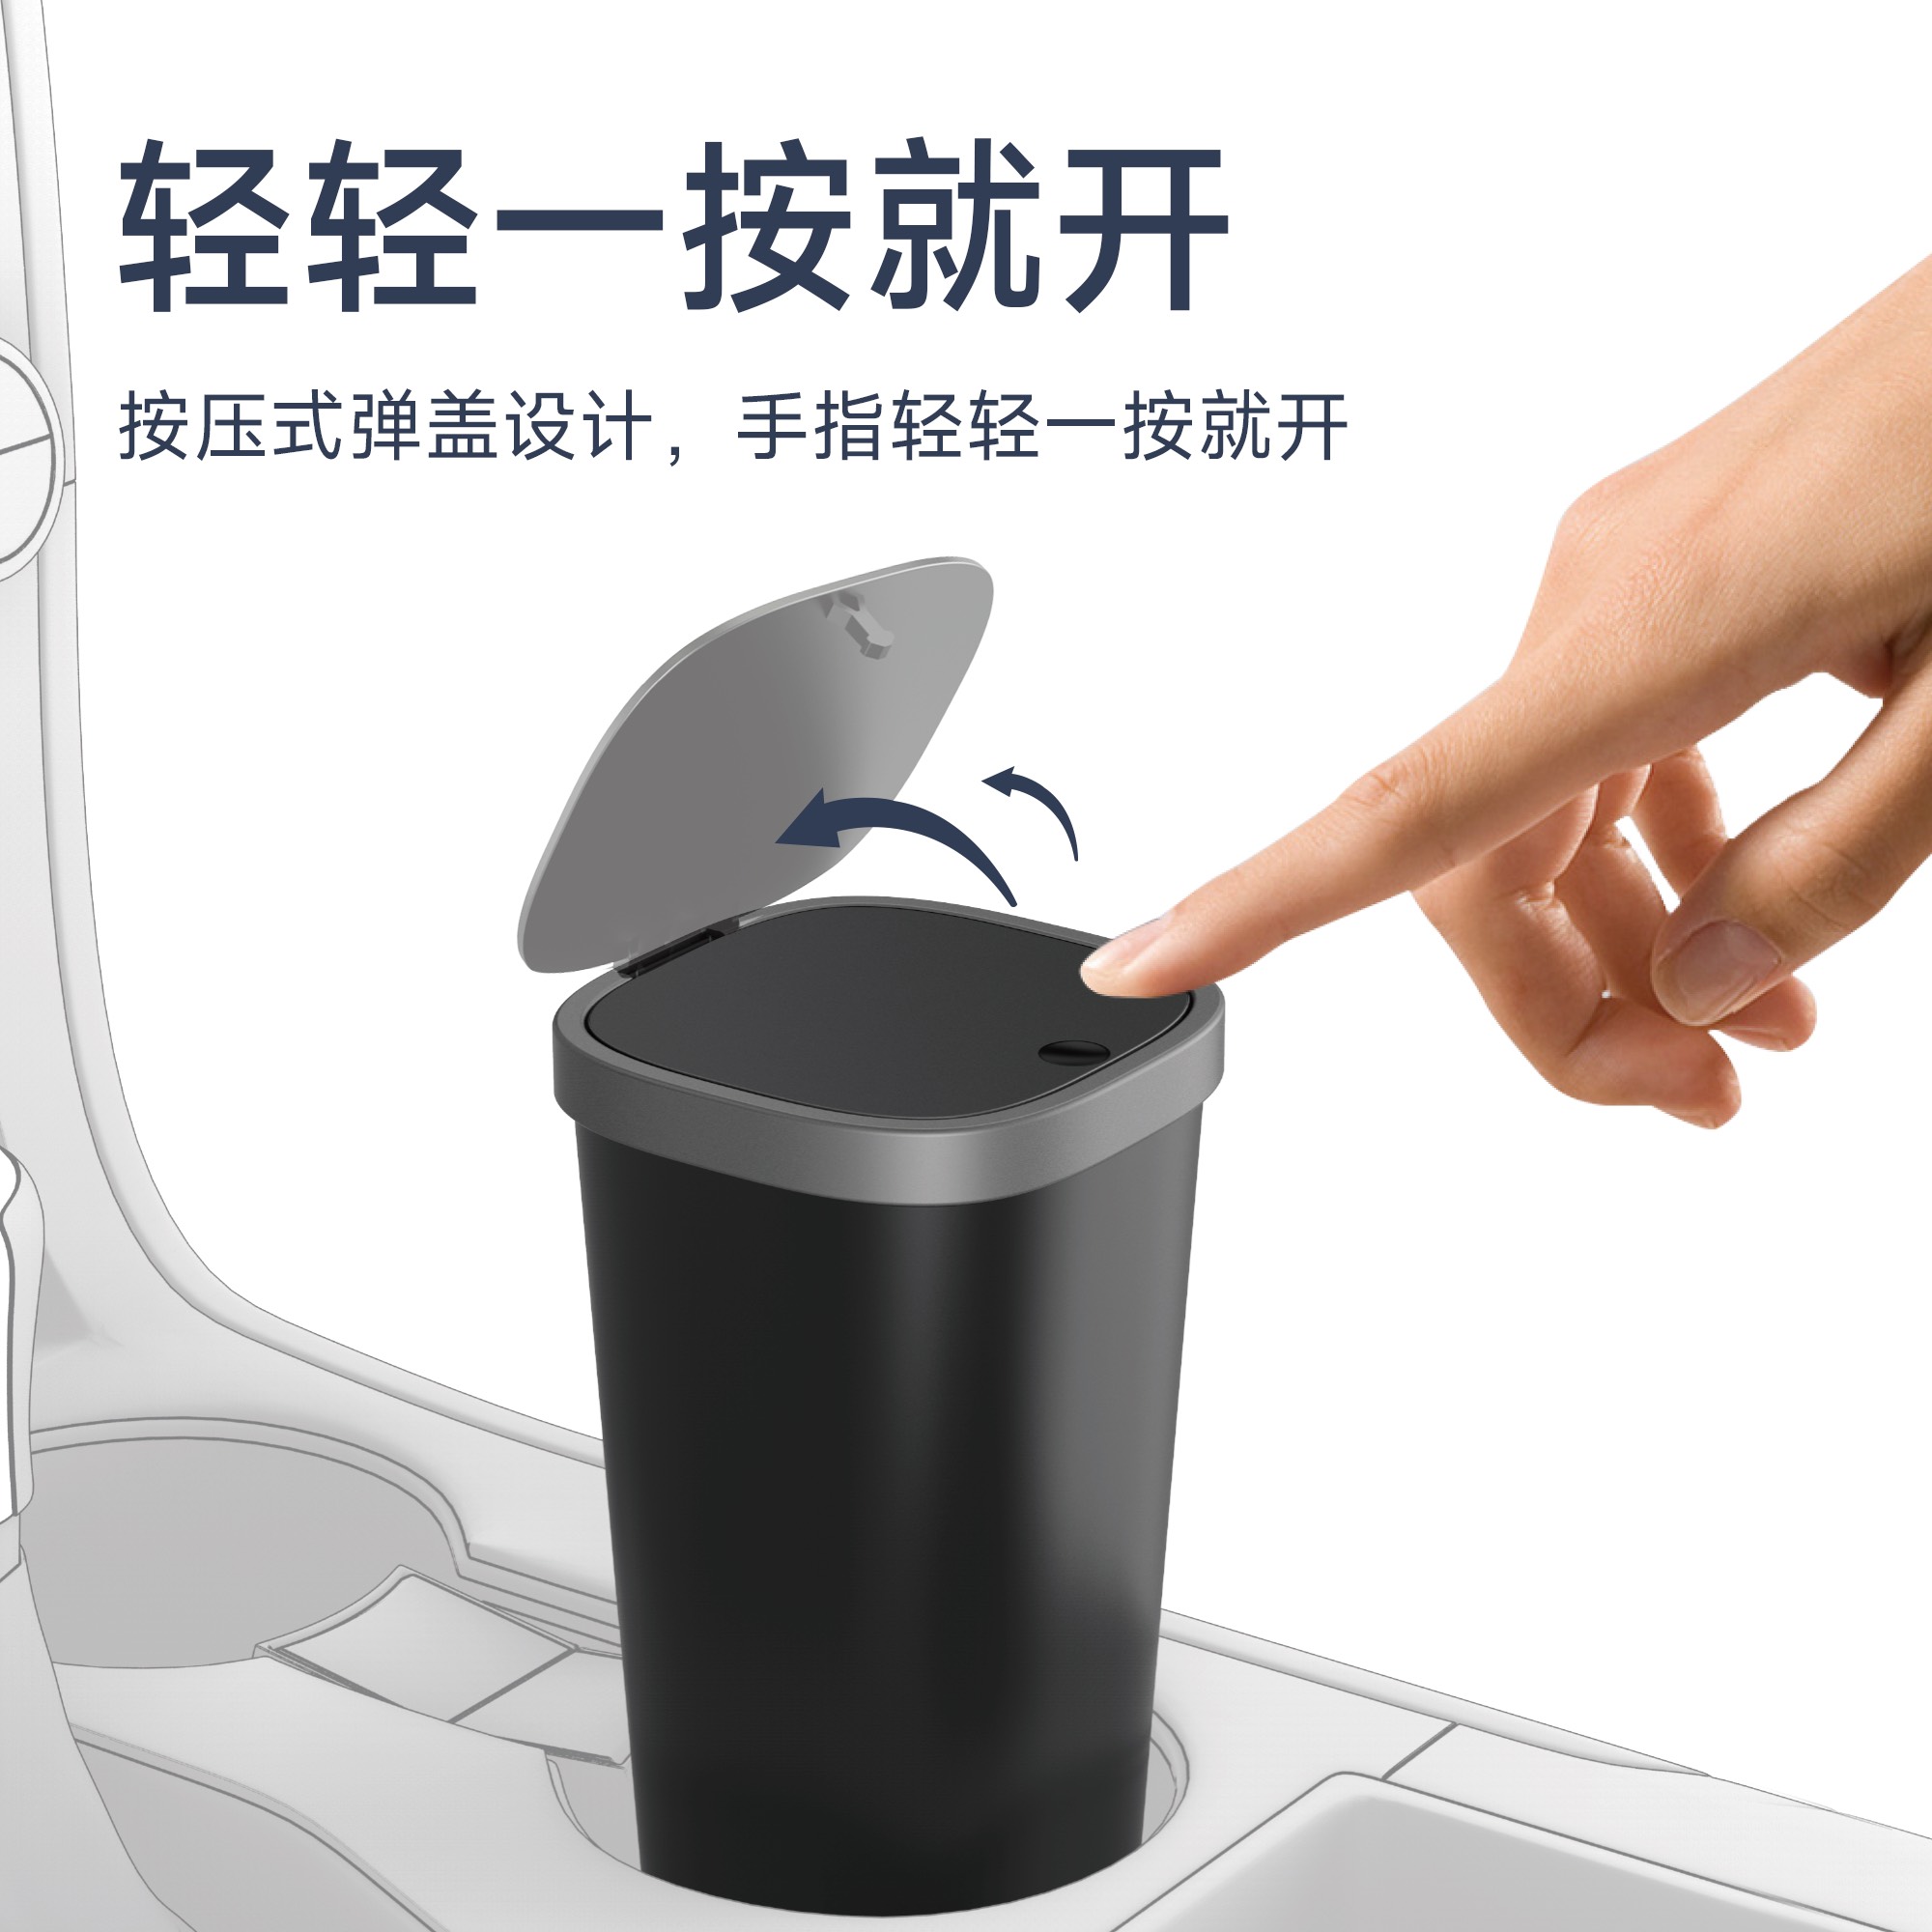 Thùng đựng rác Wiwu Trash Can CH020 cho ô tô, thiết kế nắp lò xo dạng đẩy, có thể mở nắp bằng một cái chạm nhẹ ngón tay - Hàng chính hãng